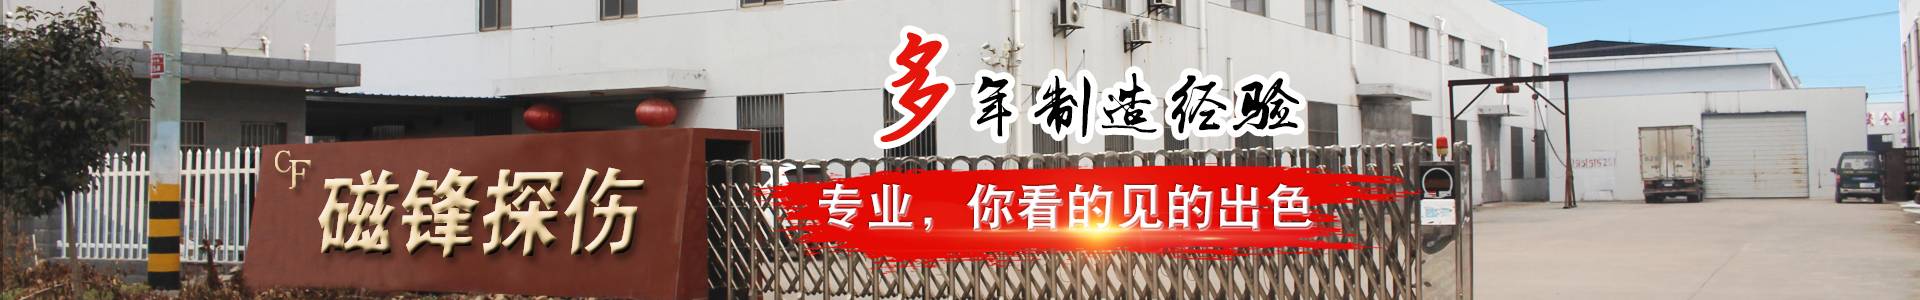 江蘇磁鋒無損檢測設備制造有限公司